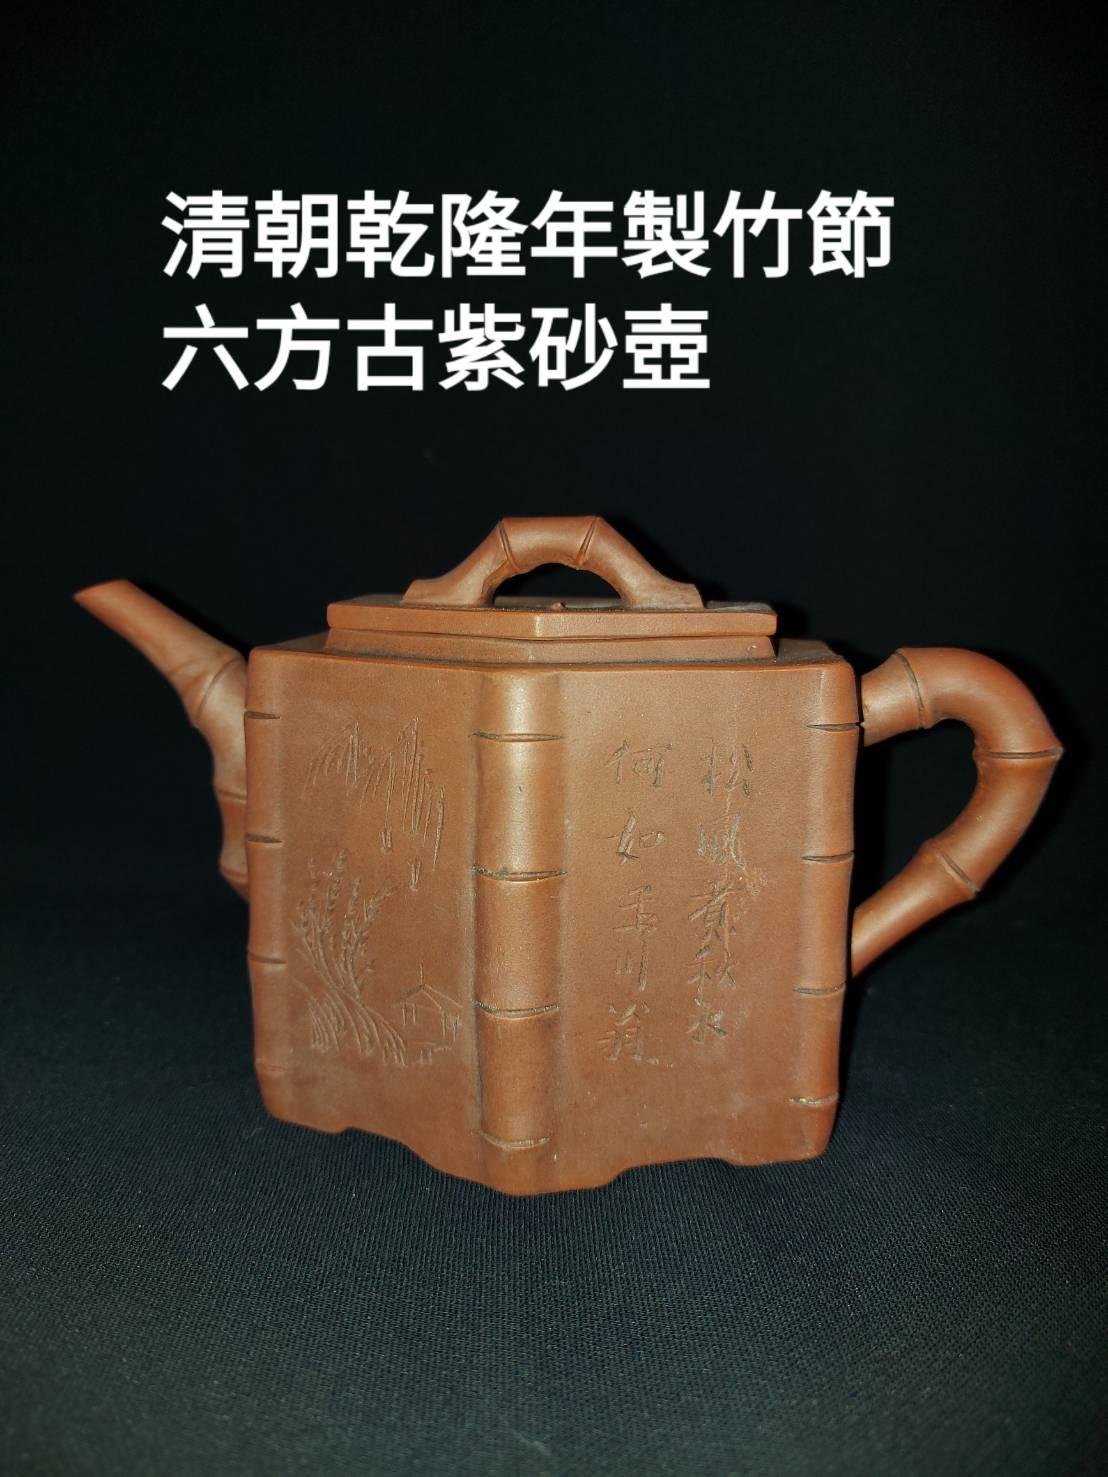 清朝乾隆年代製作古老竹節六方紫砂壺| Yahoo奇摩拍賣